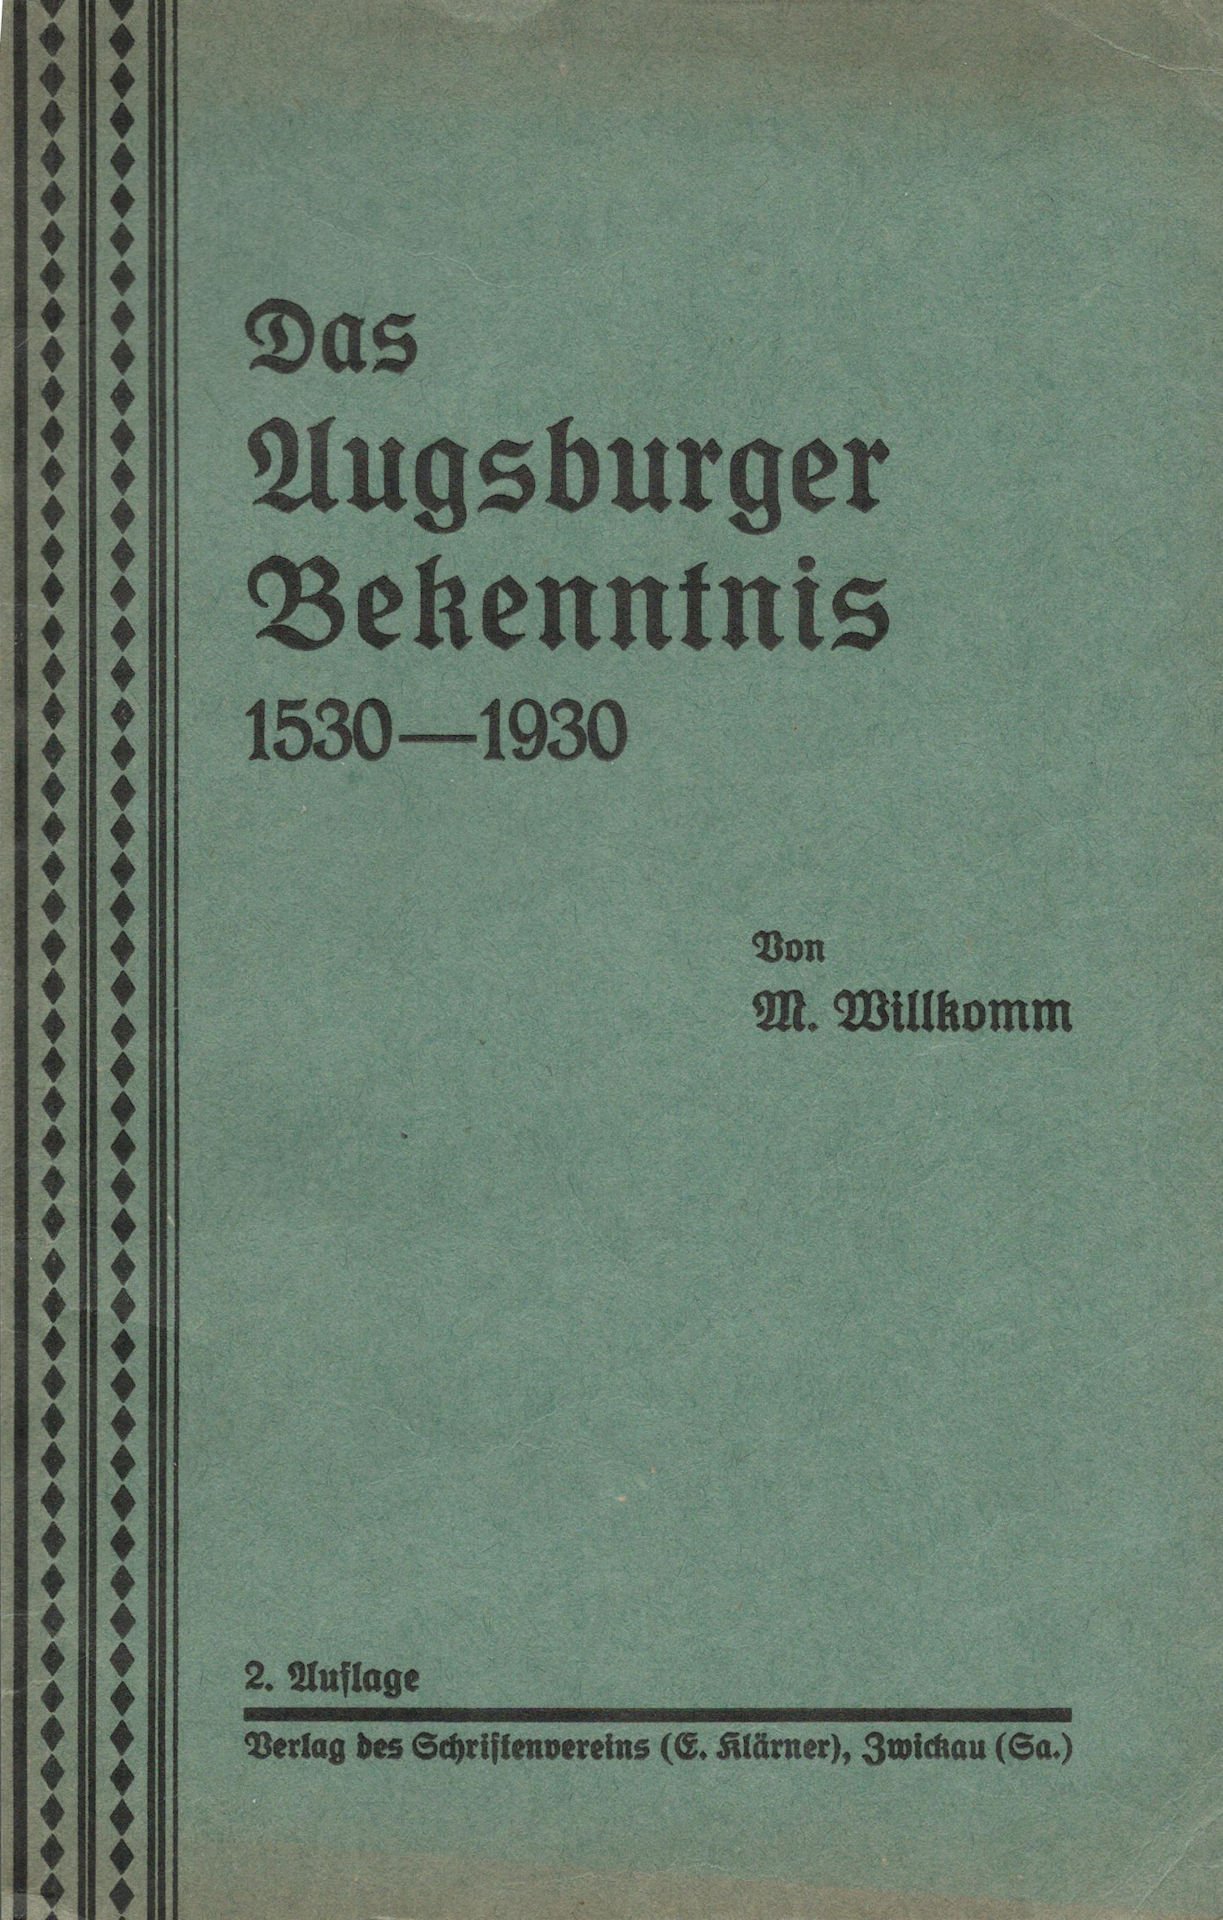 Das Augsburger Bekenntnis 1530 - 1930 (Saxonia-Freiberg-Stiftung CC BY-NC-SA)